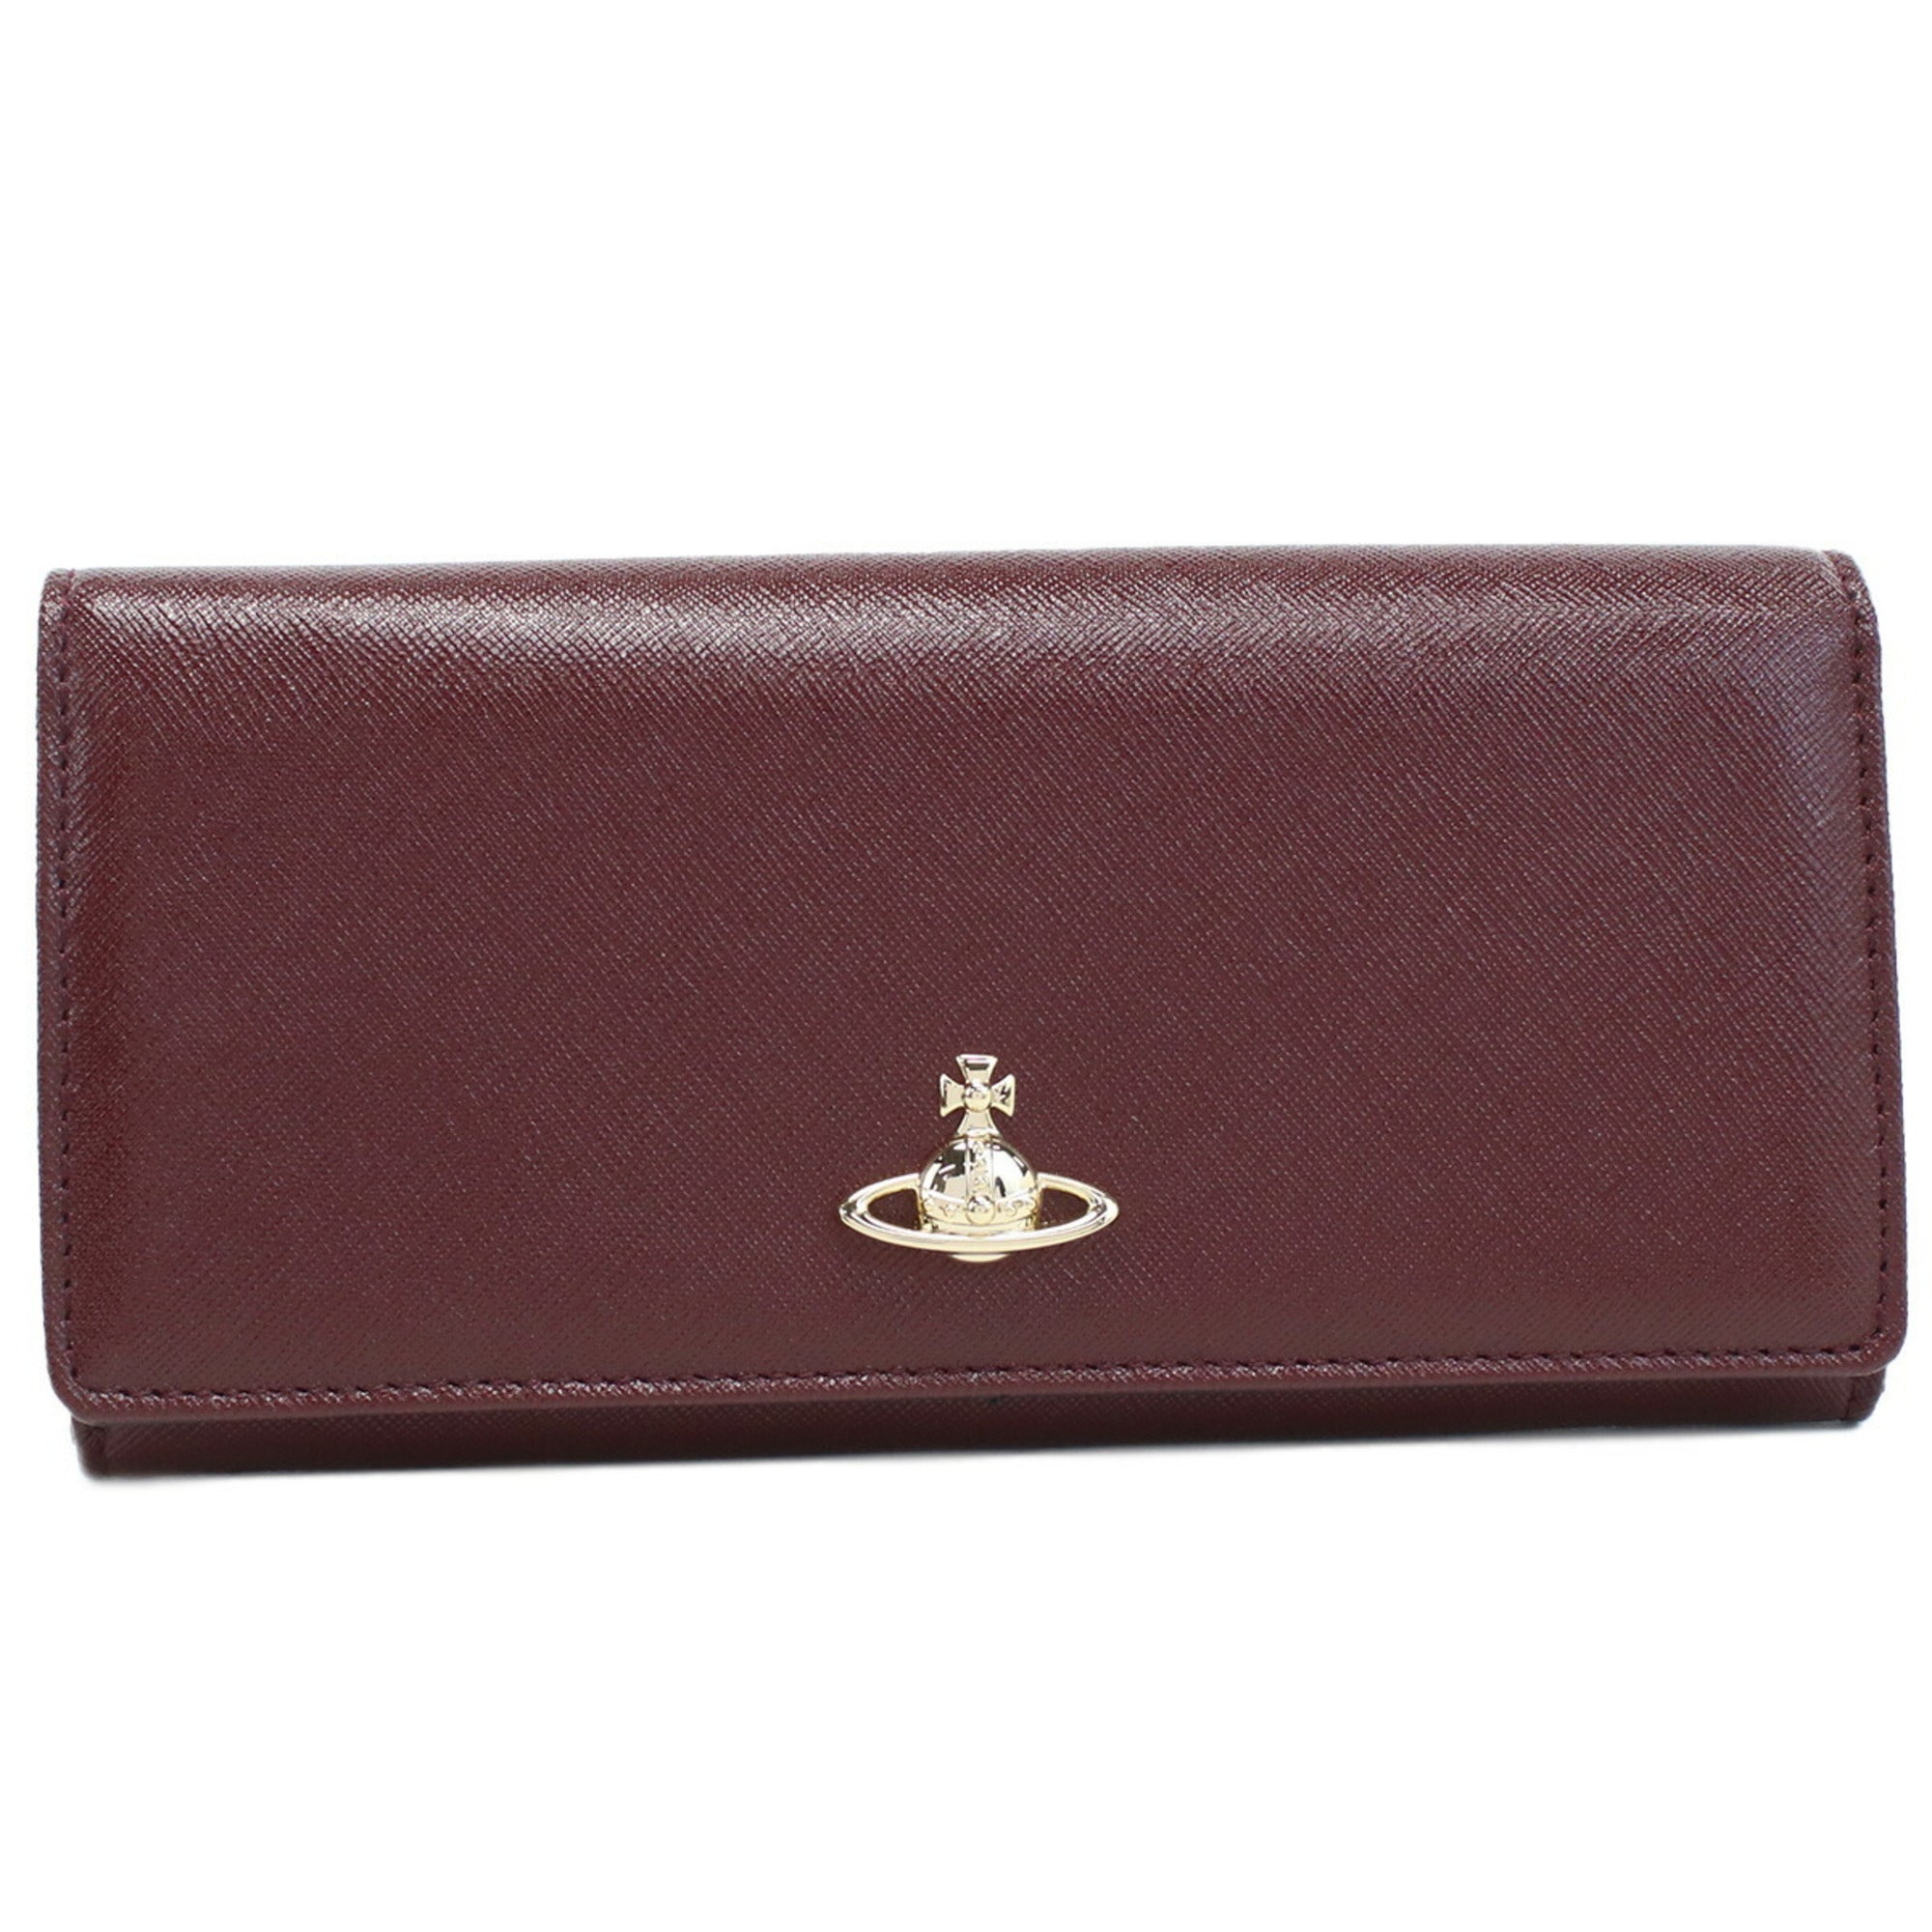 Orb-plaque faux-leather wallet | Vivienne Westwood | Eraldo.com